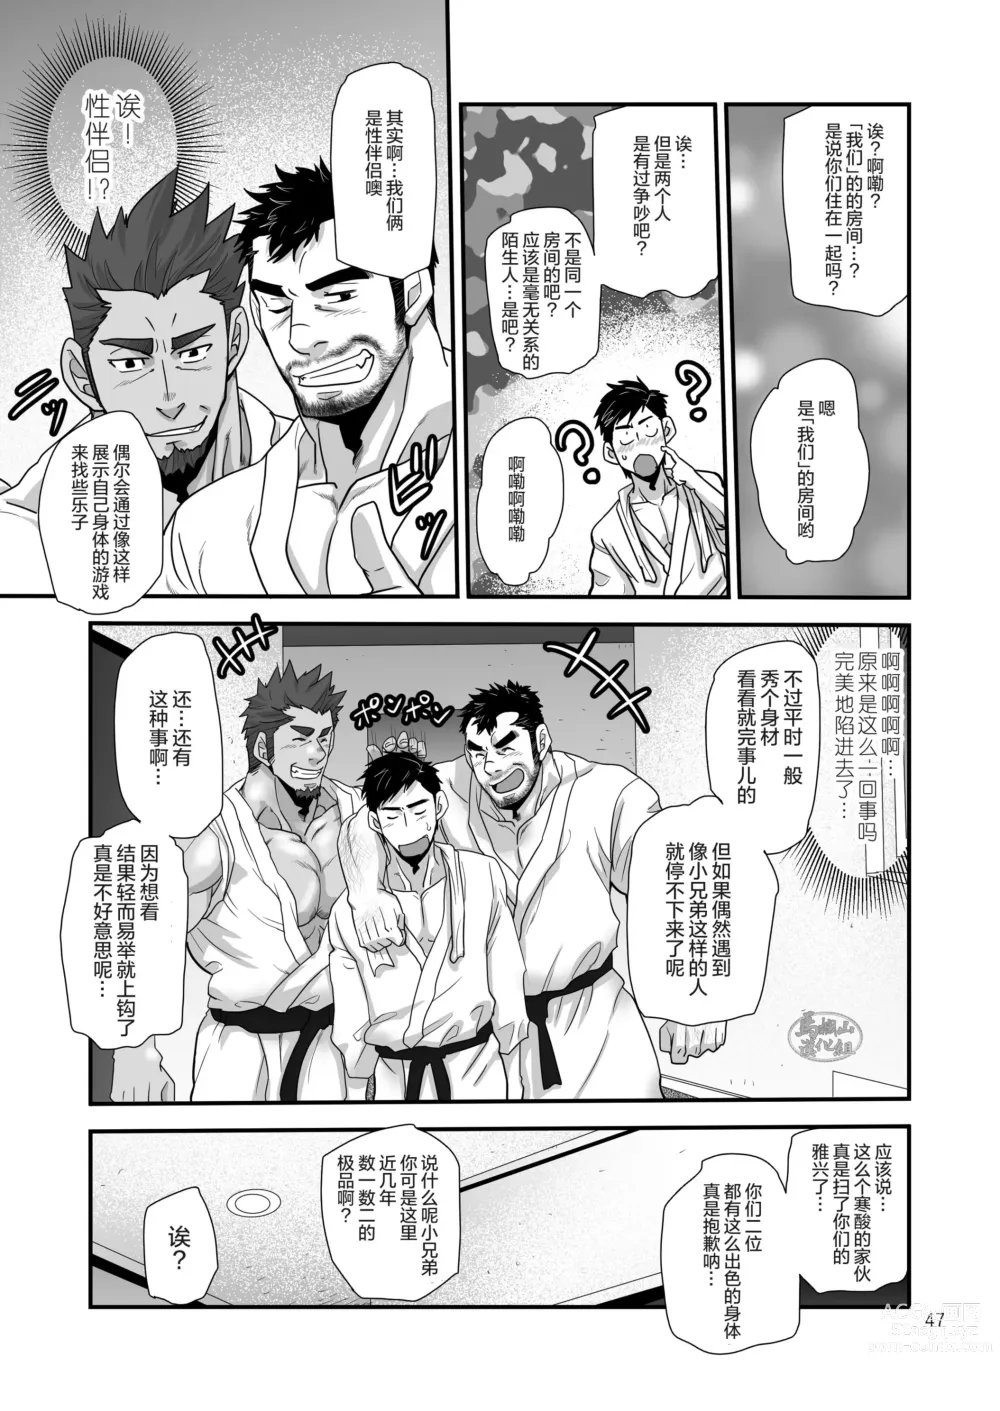 Page 47 of manga 松武互悦同衆!!_旅の恥はヌキすて